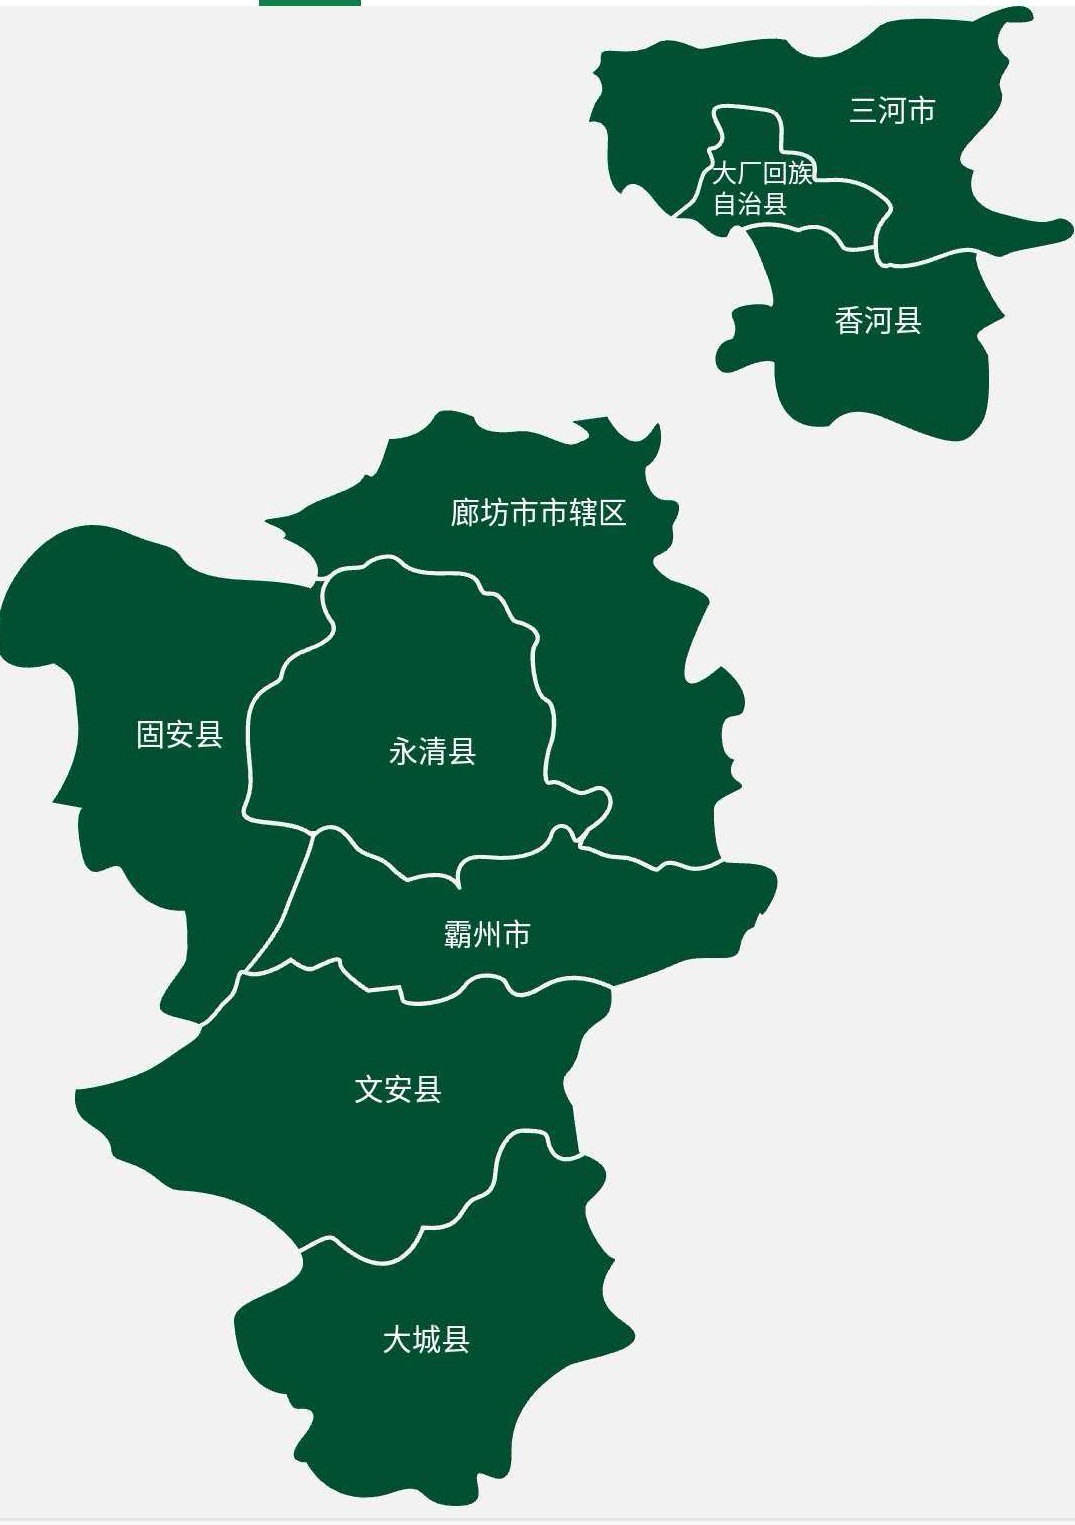 山东省廊坊市地图图片